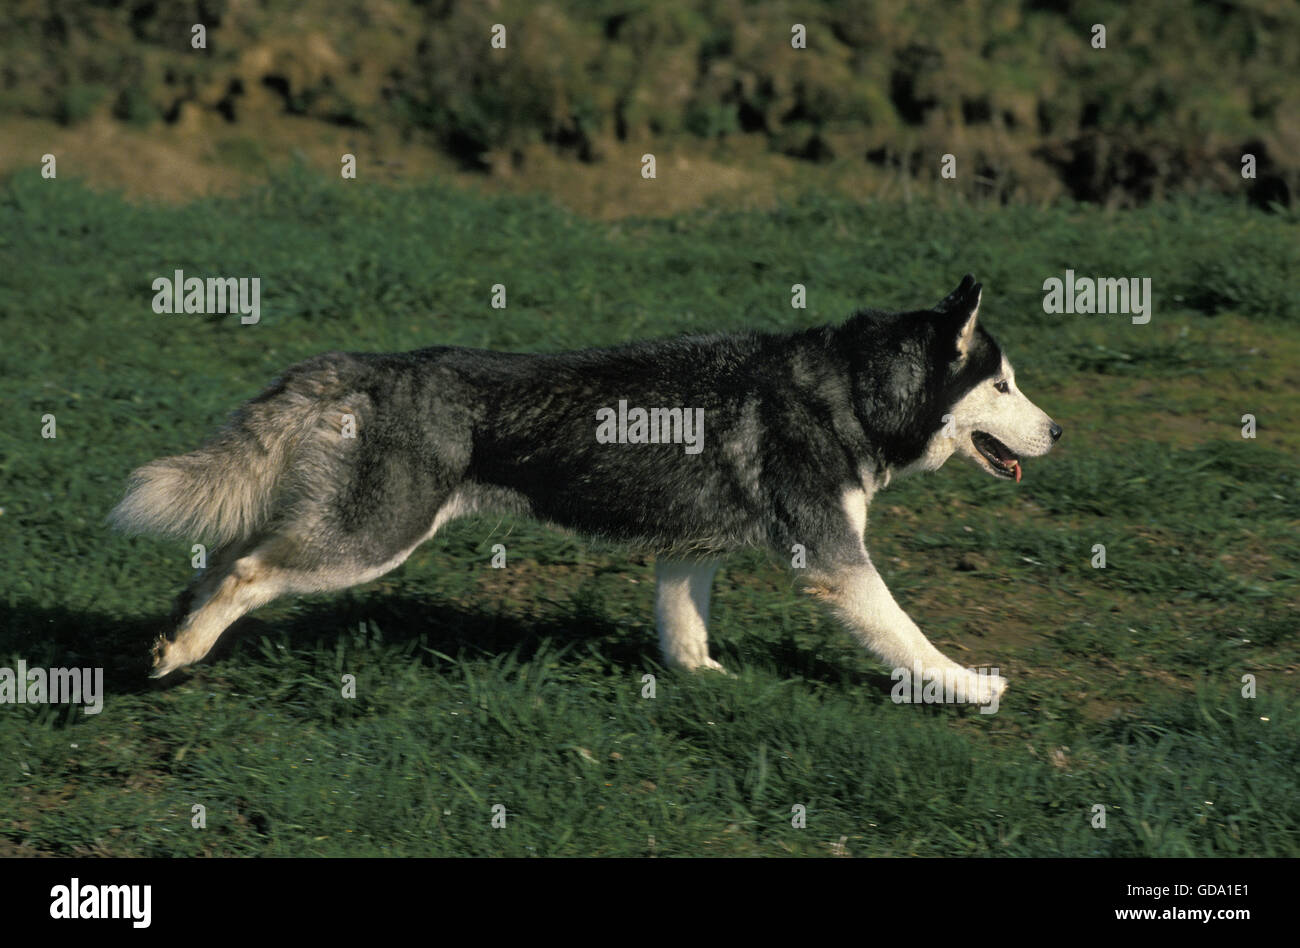 Siberian Husky Dog walking on Grass Banque D'Images